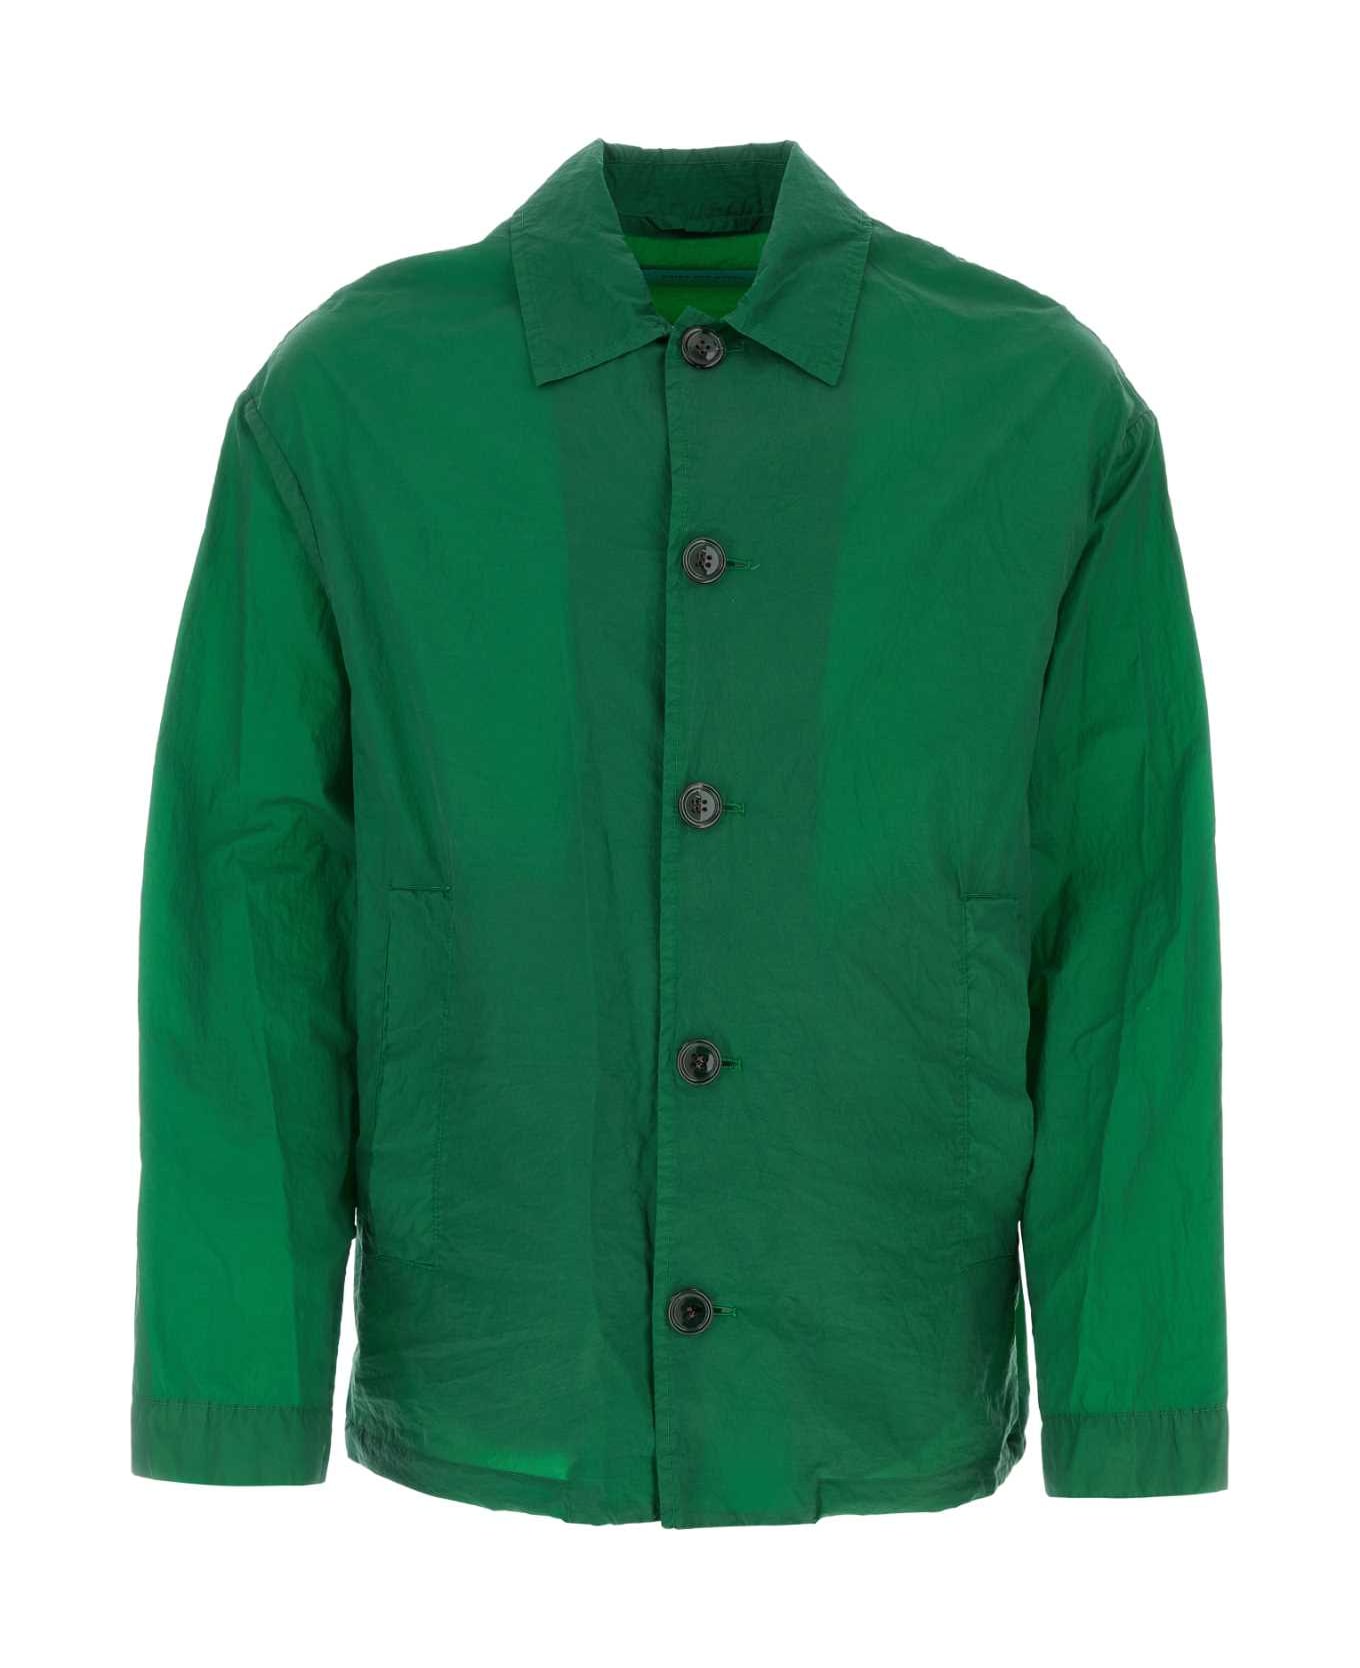 Dries Van Noten Grass Green Coated Denim Vormac Jacket - 604 ジャケット